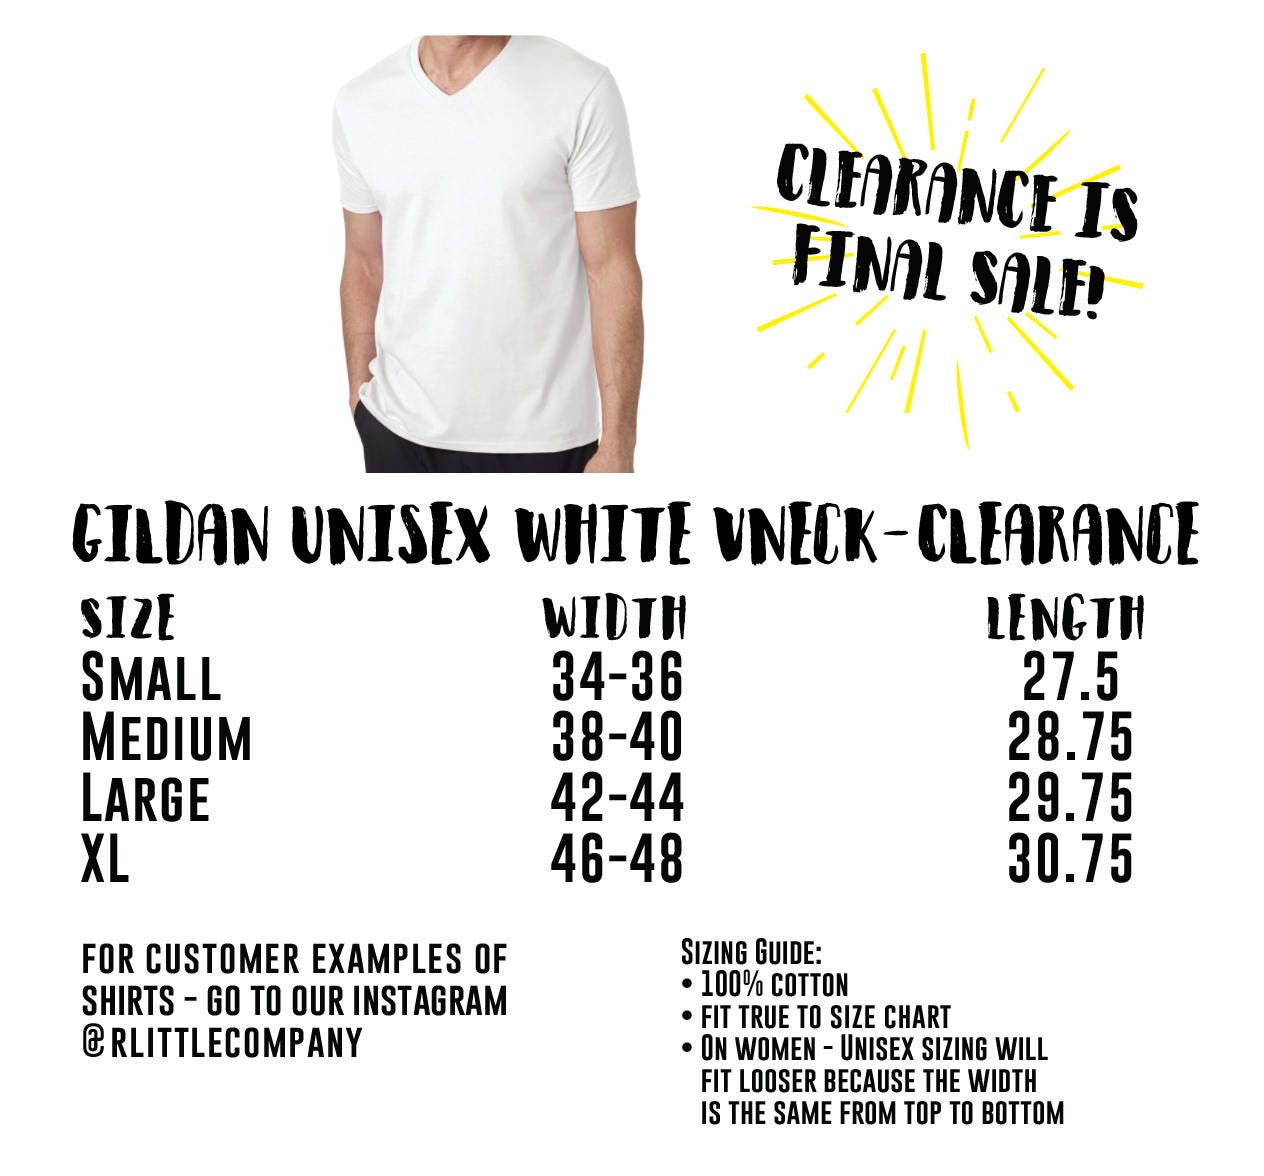 Gildan Unisex T Shirt Size Chart